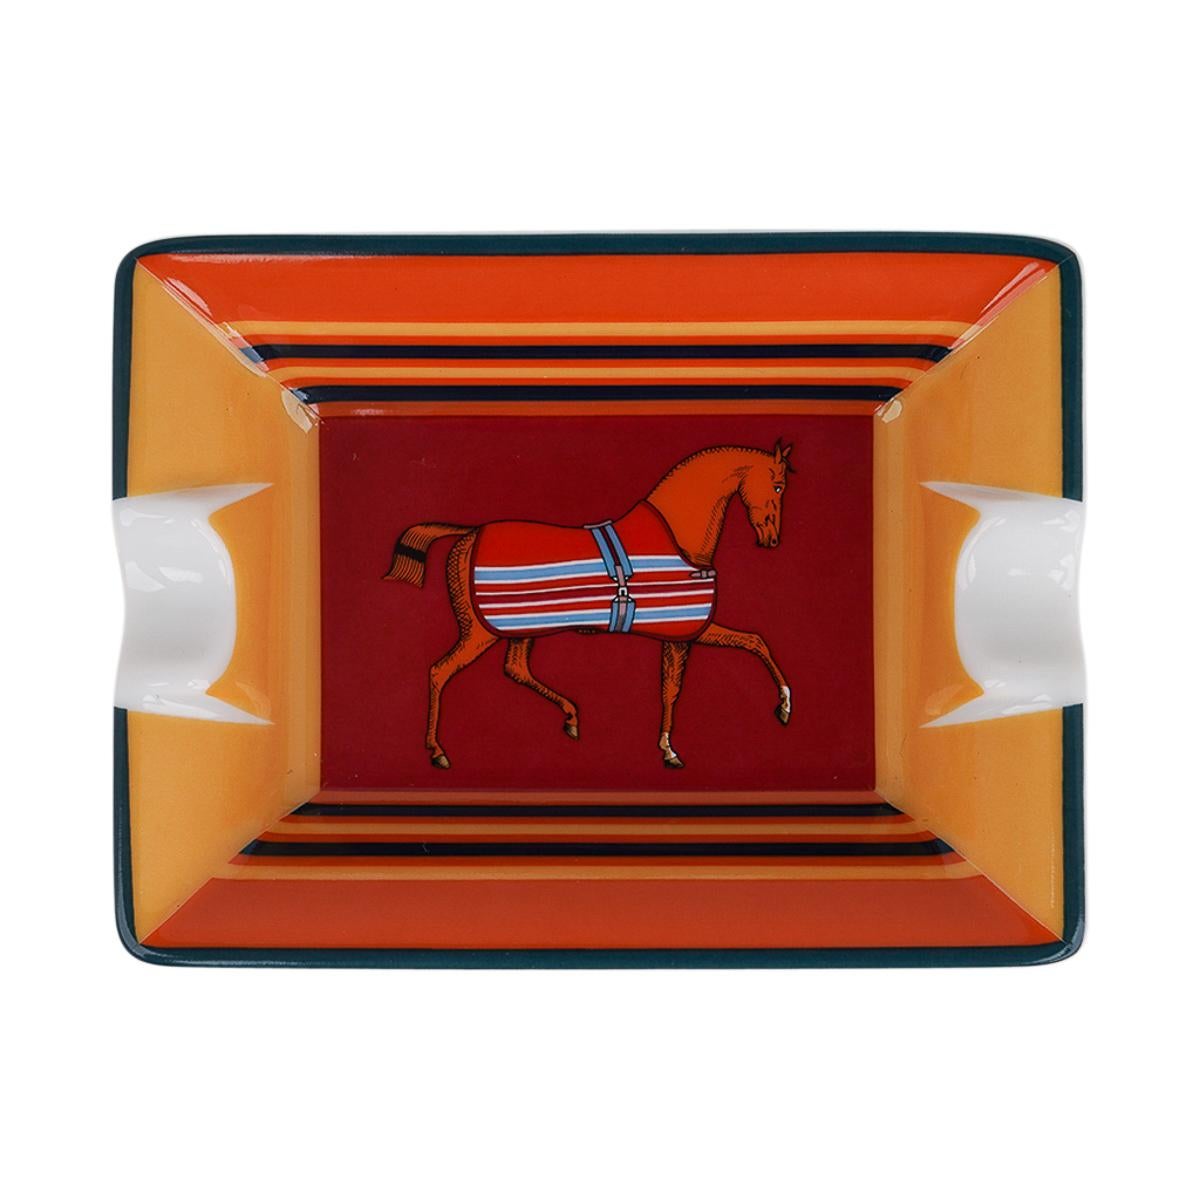 Mightychic bietet Hermes Rocabar ein Cheval Set von zwei
( 2 ) Mini-Aschenbecher.
Rouge H und Terracotta Farbe.
Ein perfekter Akzent für jeden Raum.
Geschützt durch eine Samtunterlage aus Ziegenleder.
Wunderbar für den Schreibtisch oder zum